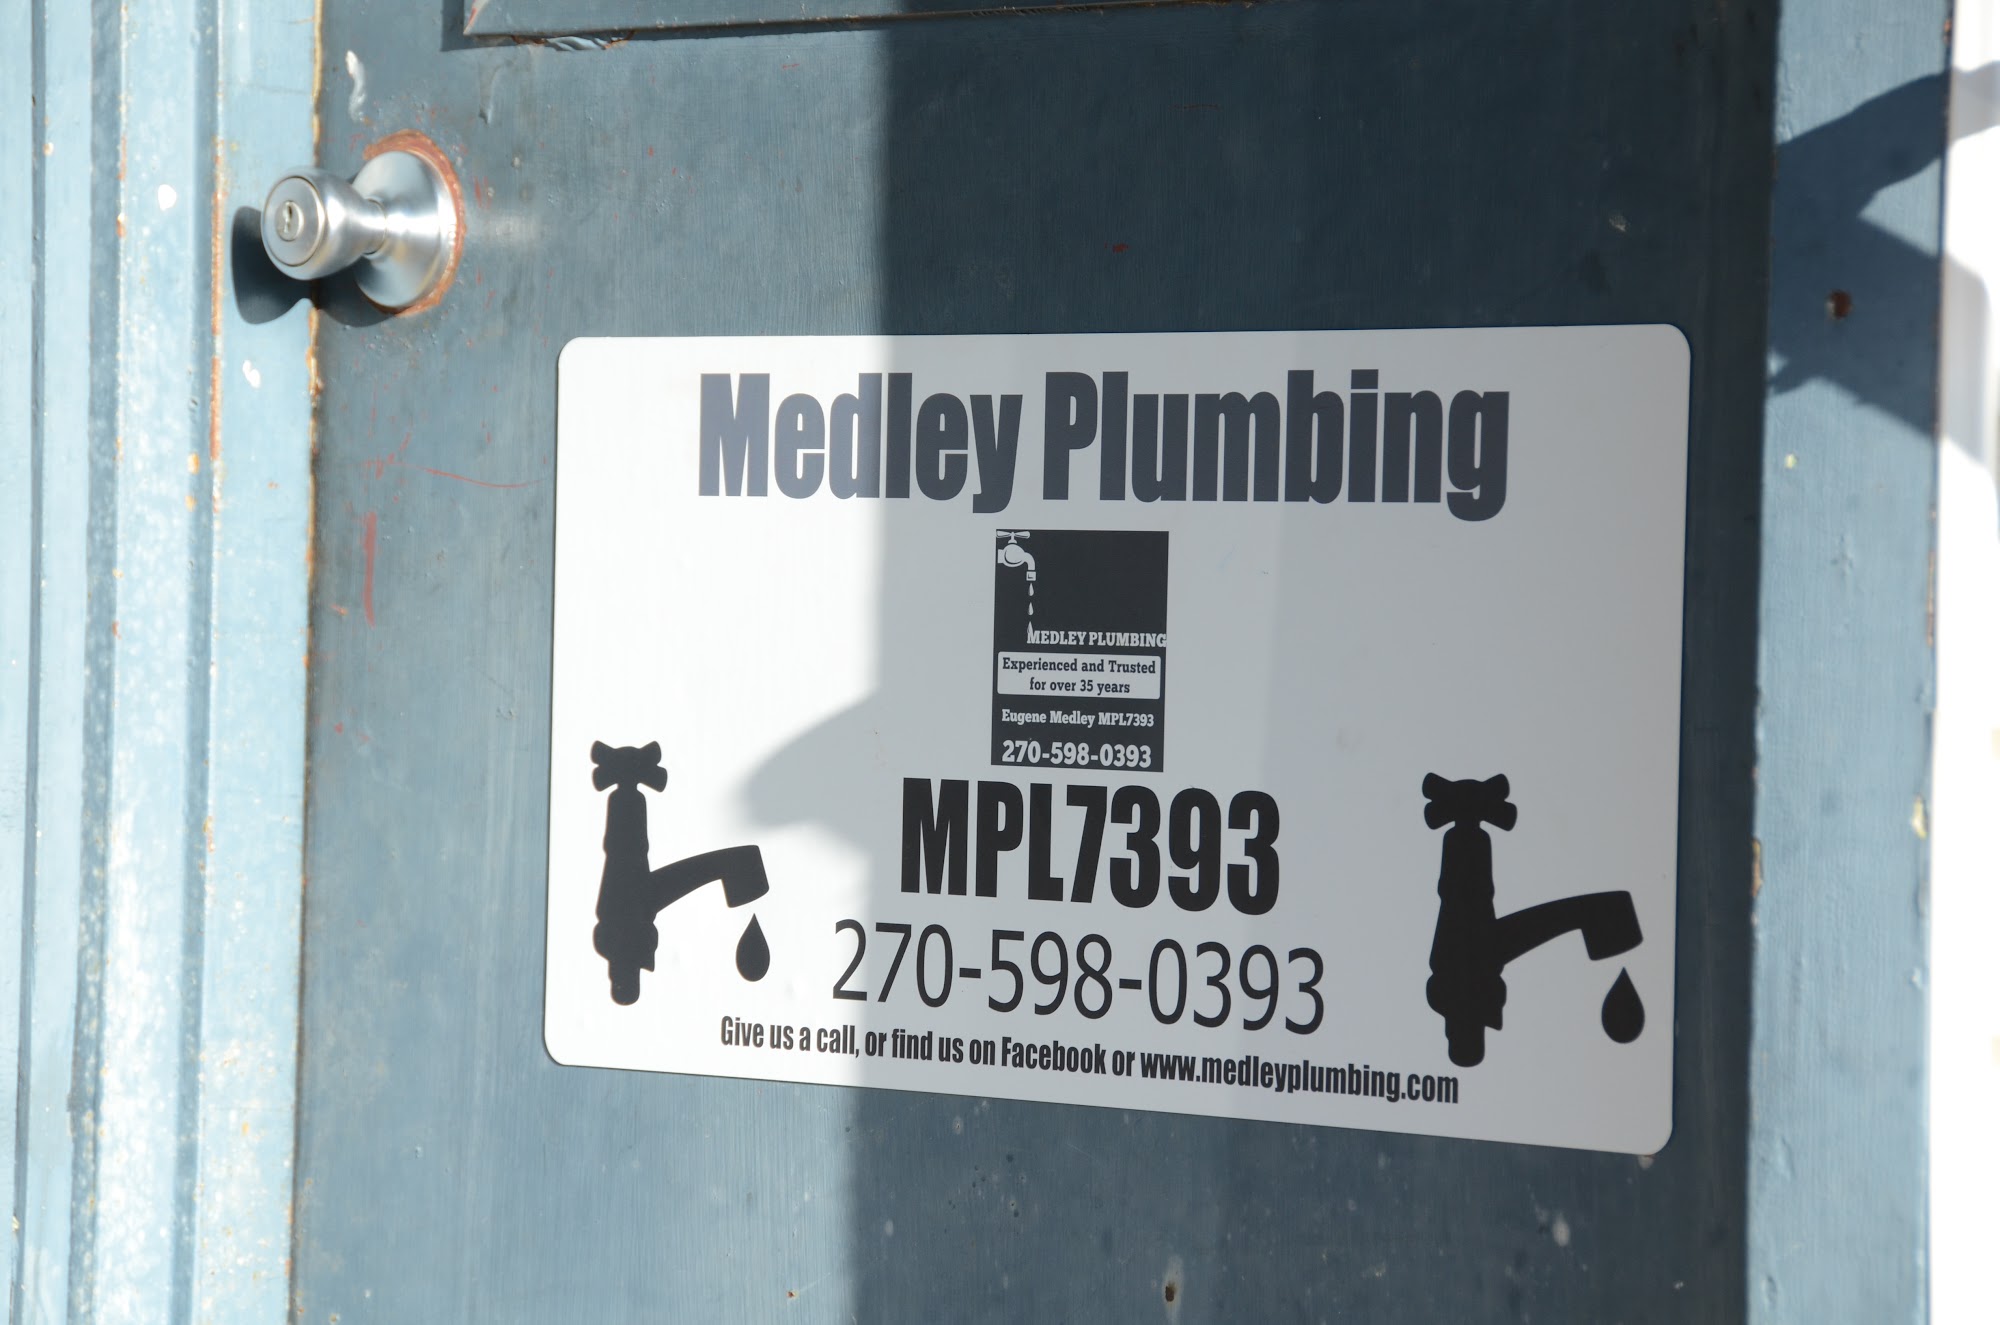 Medley Plumbing 318 W Kentucky Ave, Franklin Kentucky 42134